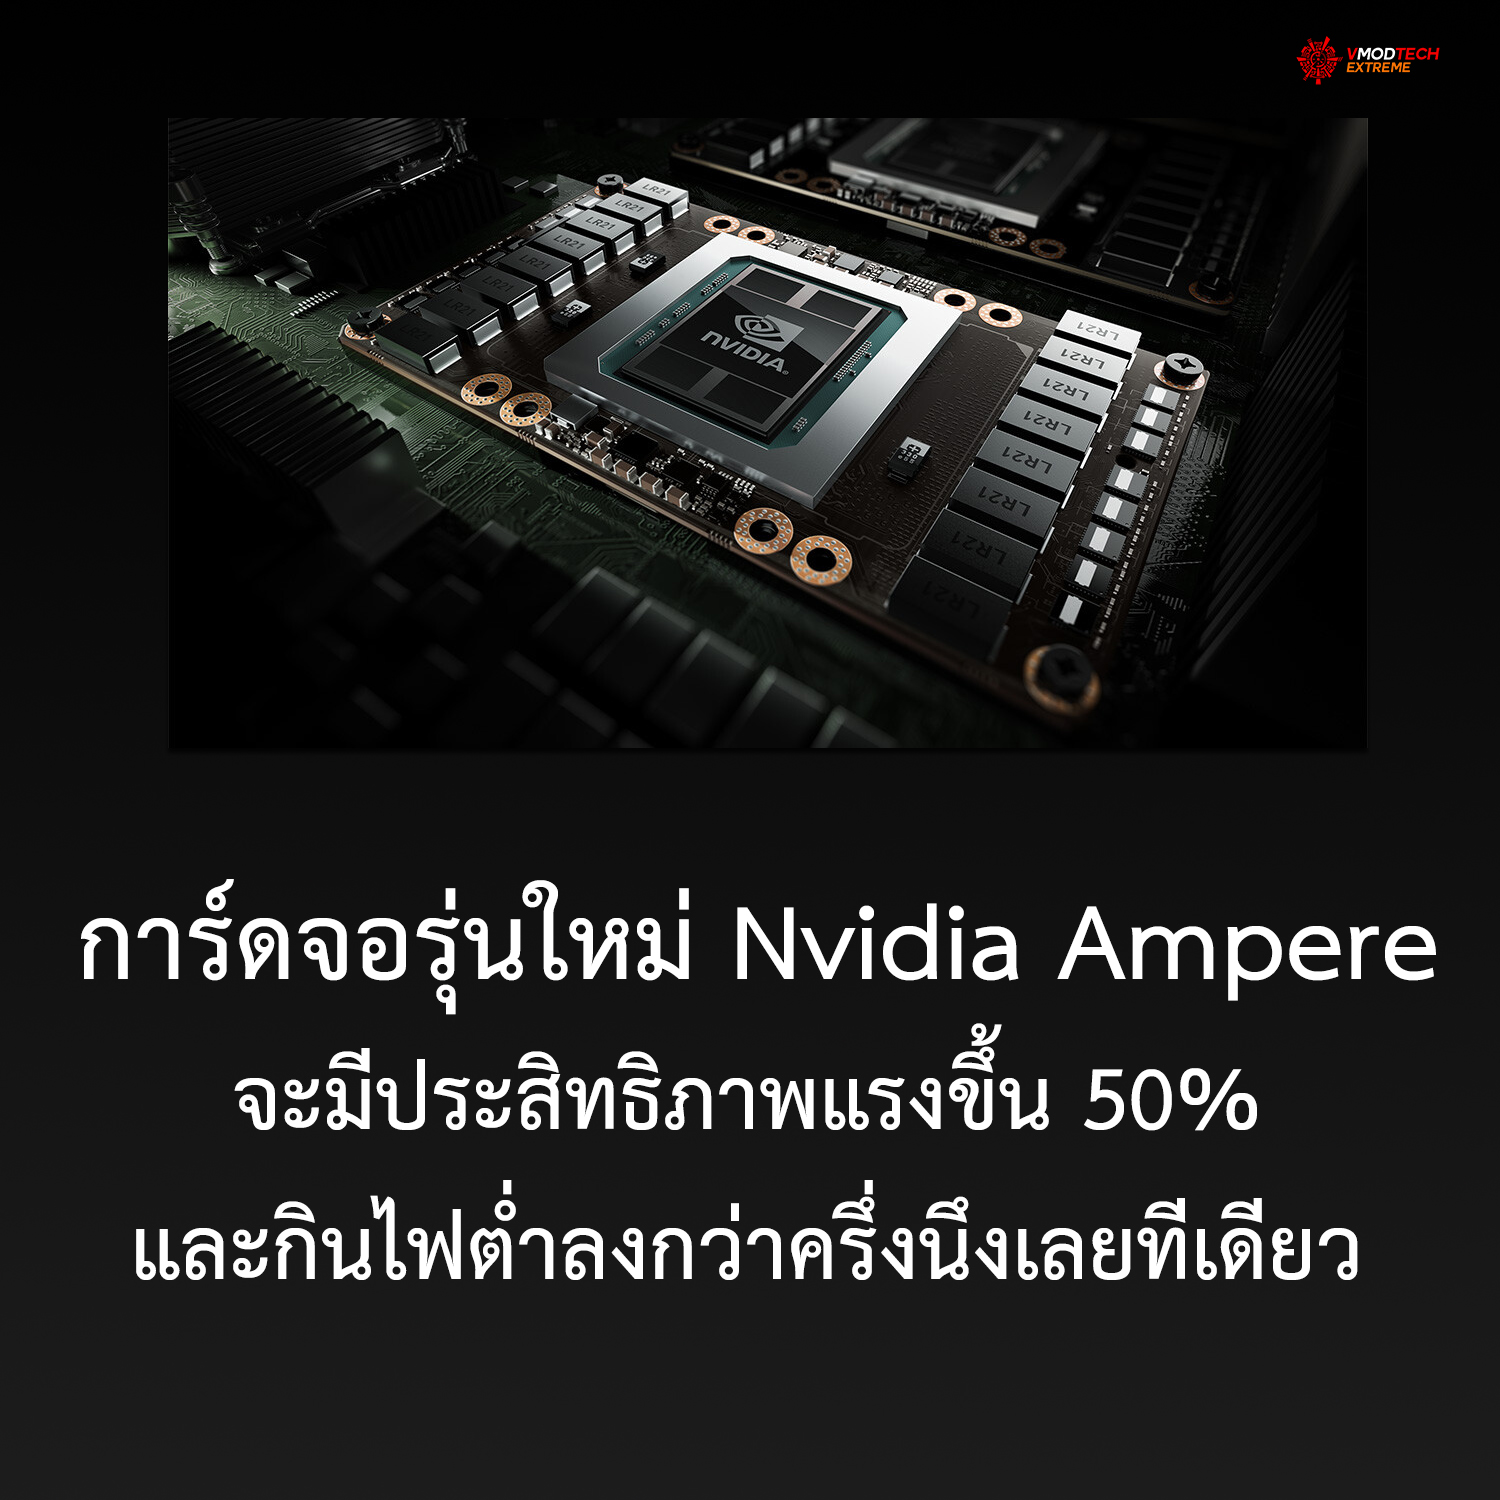 nvidia ampare การ์ดจอรุ่นใหม่ของทาง Nvidia สถาปัตย์ Ampere จะมีประสิทธิภาพแรงขึ้น 50% และกินไฟต่ำลงกว่าครึ่งนึงเลยทีเดียว 